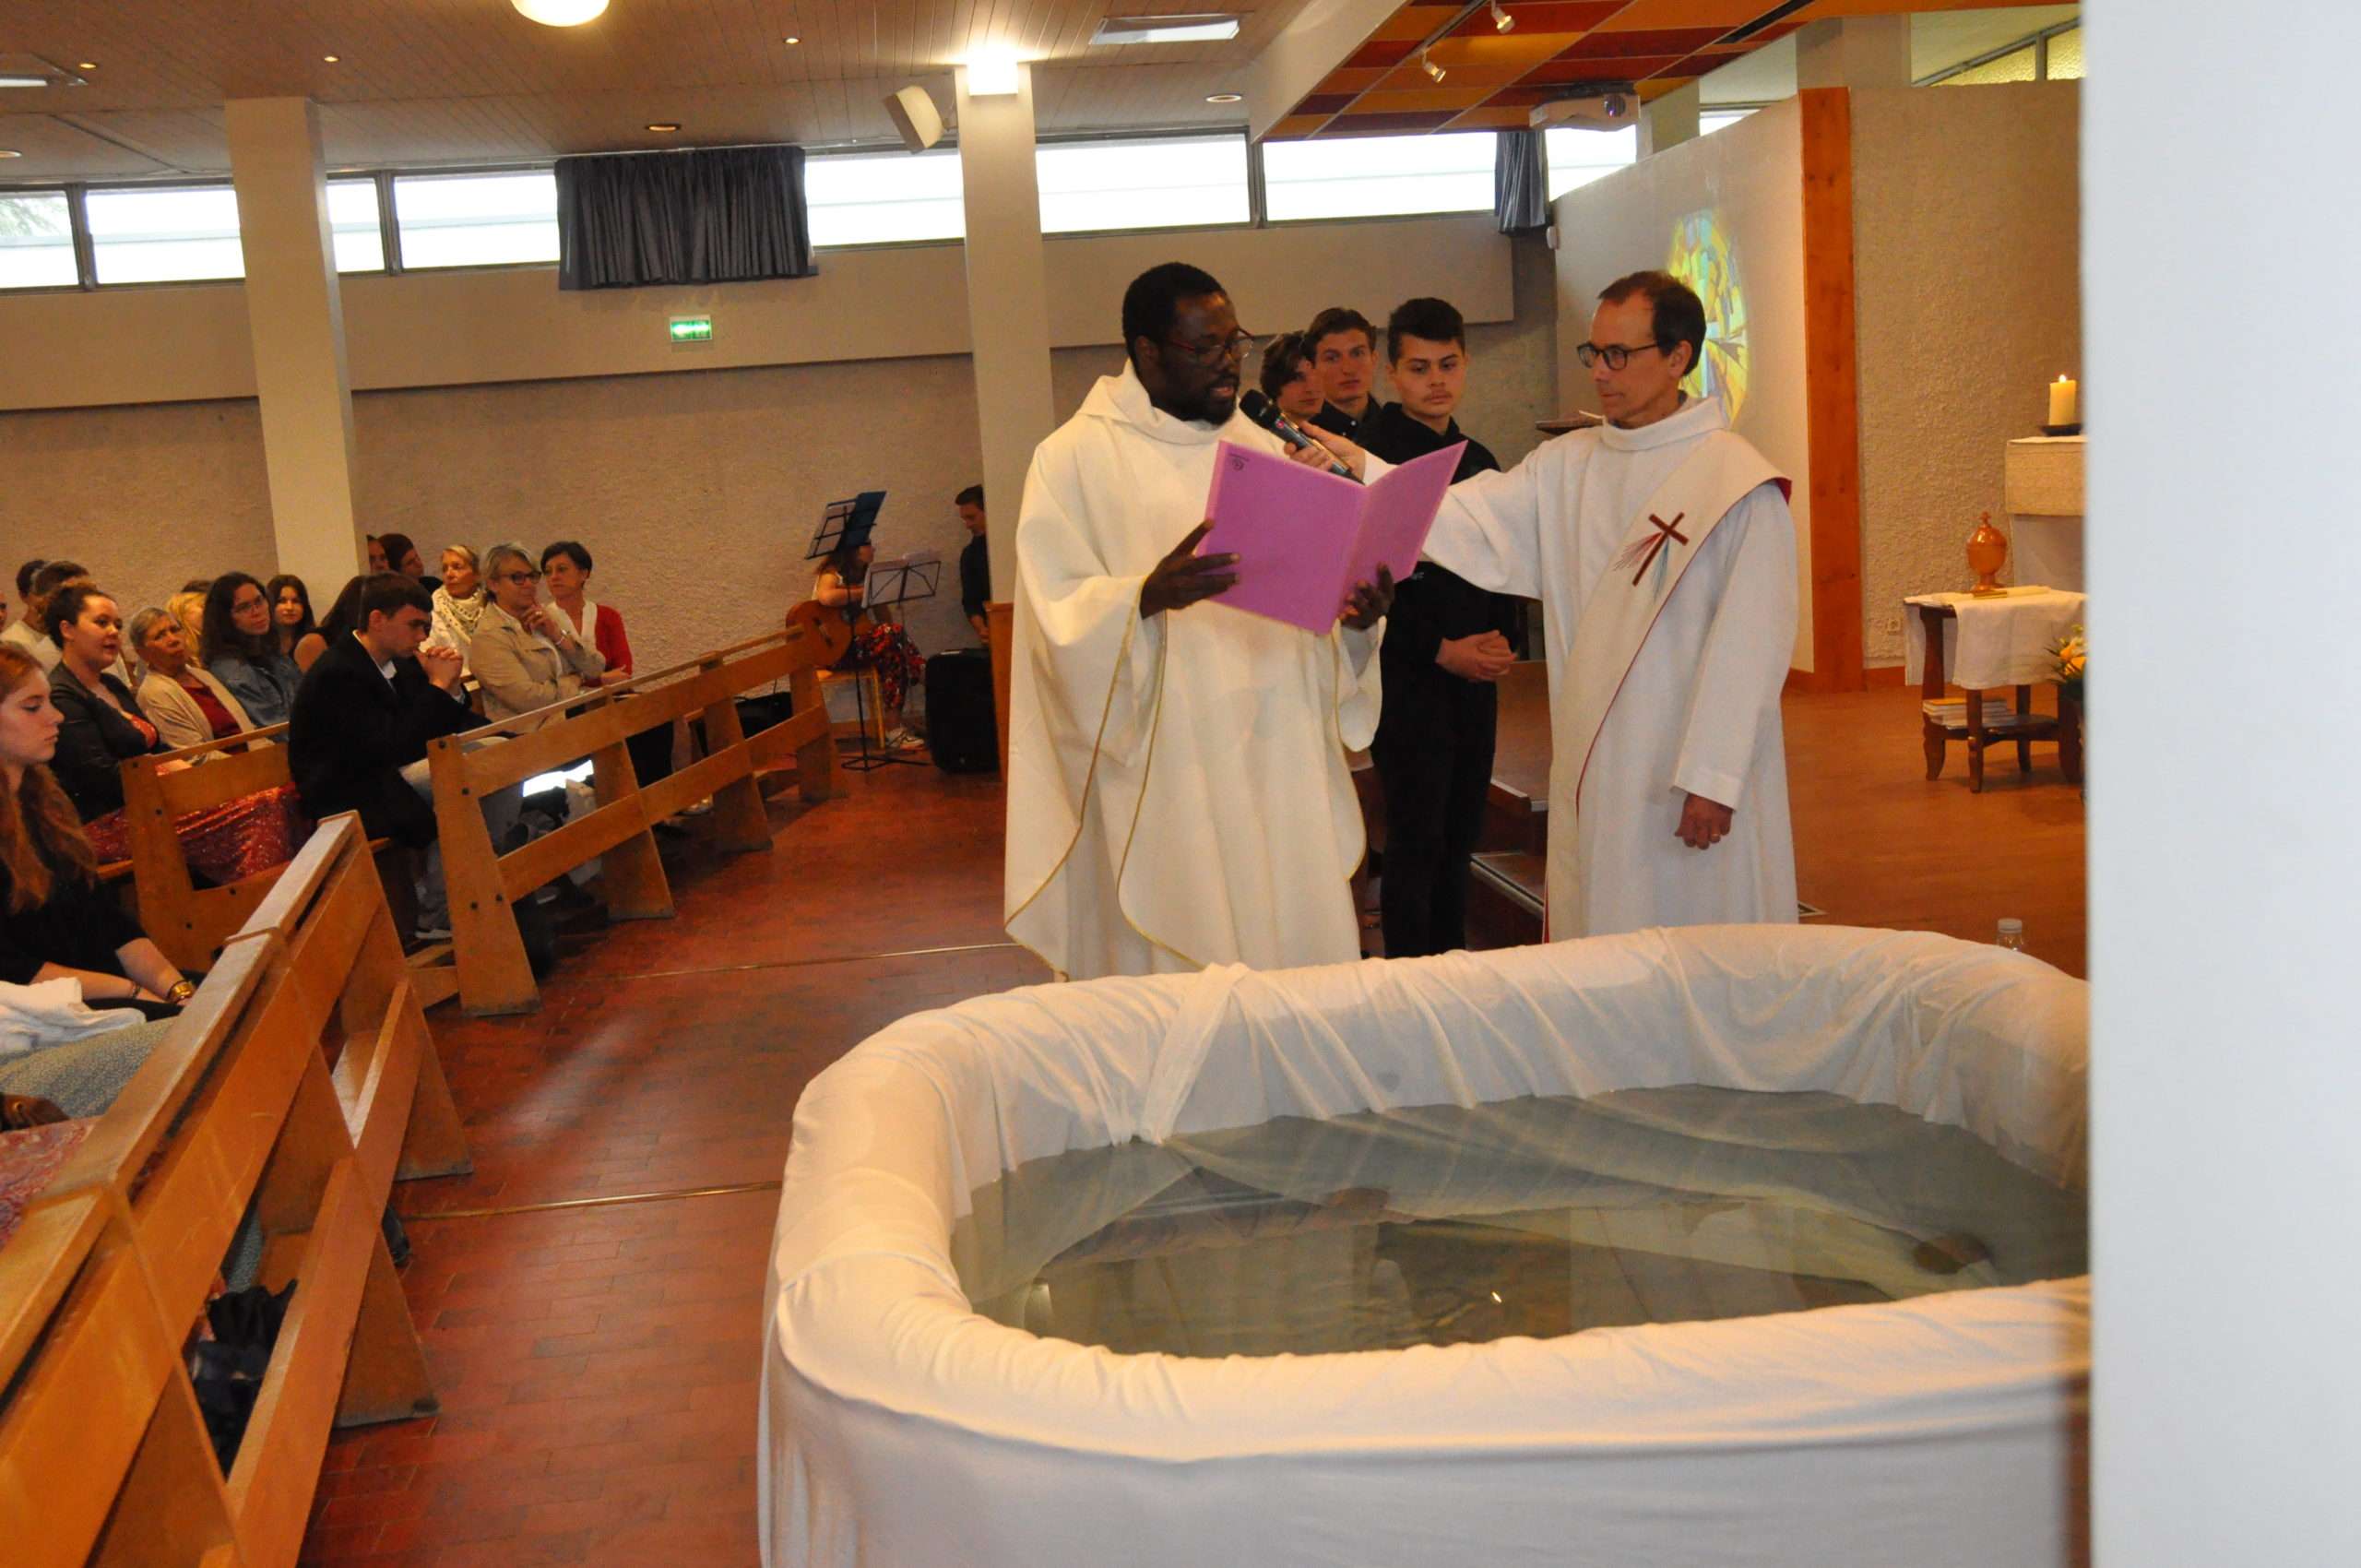 Messe-de-fin-dannee-bapteme-et-1ere-communion-15